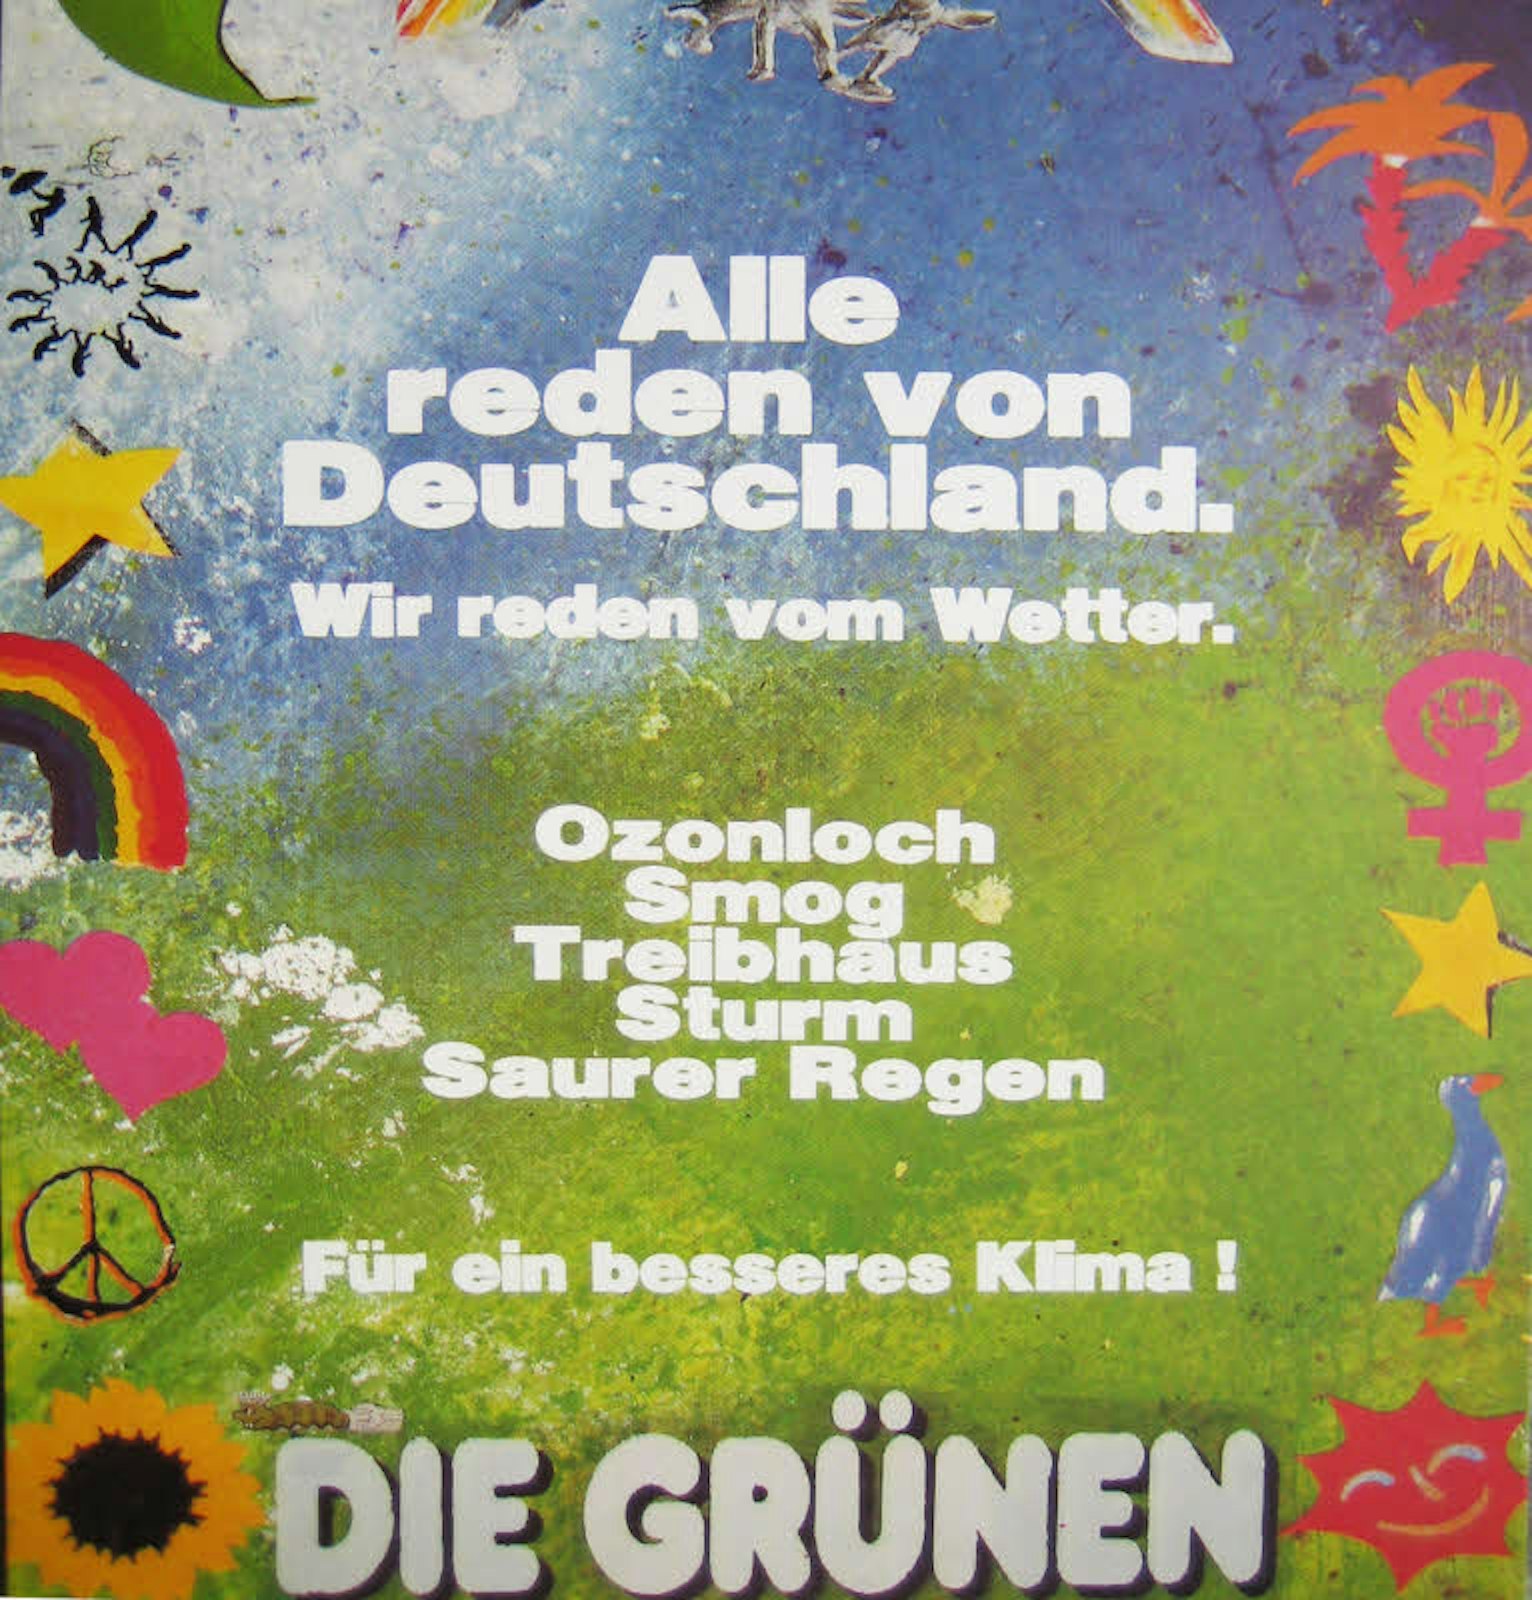 Wahlplakat der Grünen für die erste gesamtdeutsche Wahl 1990.